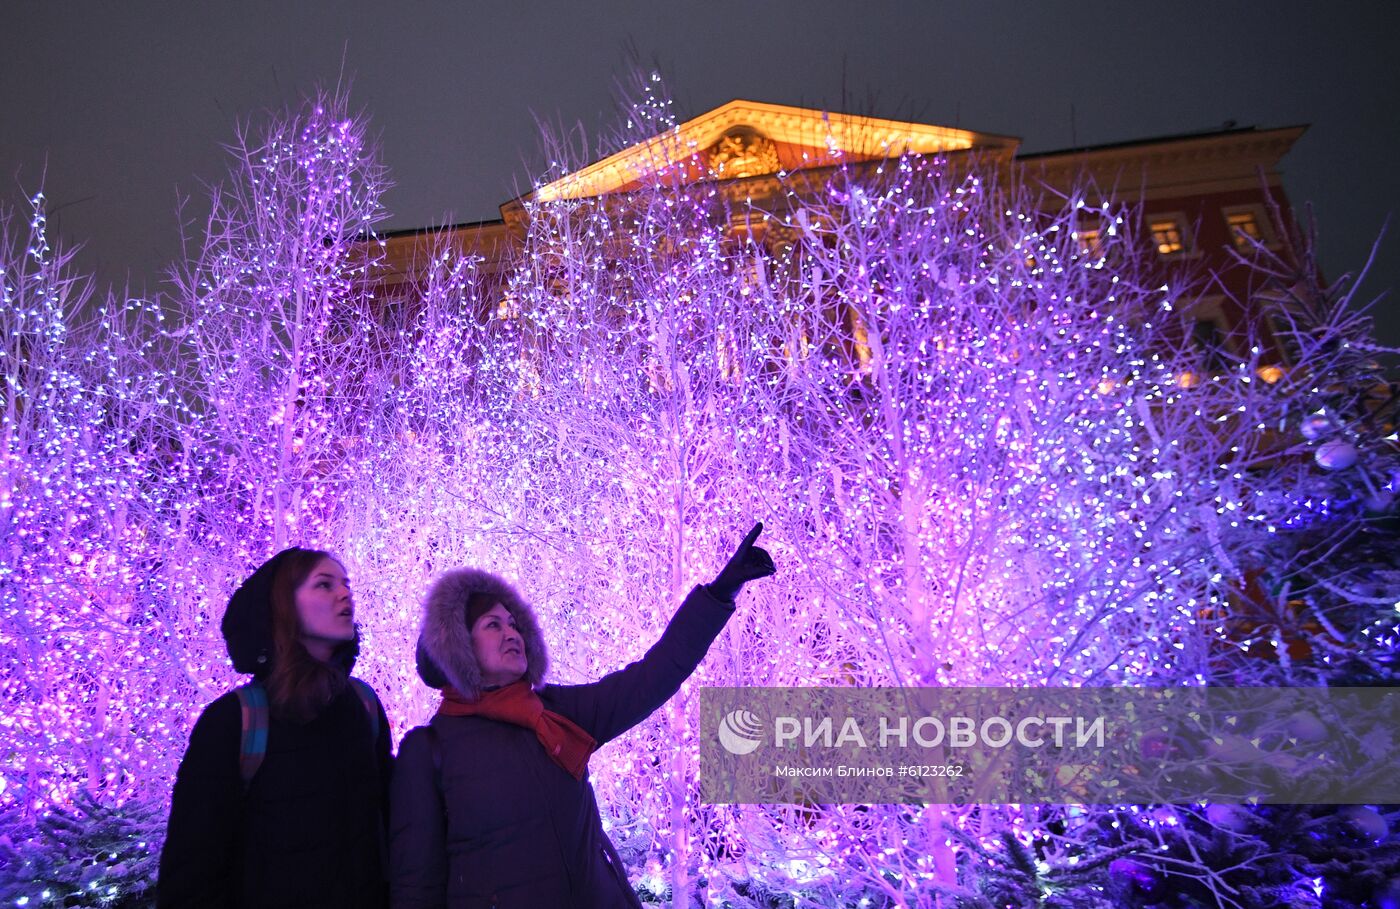 Новогоднее украшение центральных улиц Москвы Новогоднее украшение центральных улиц Москвы